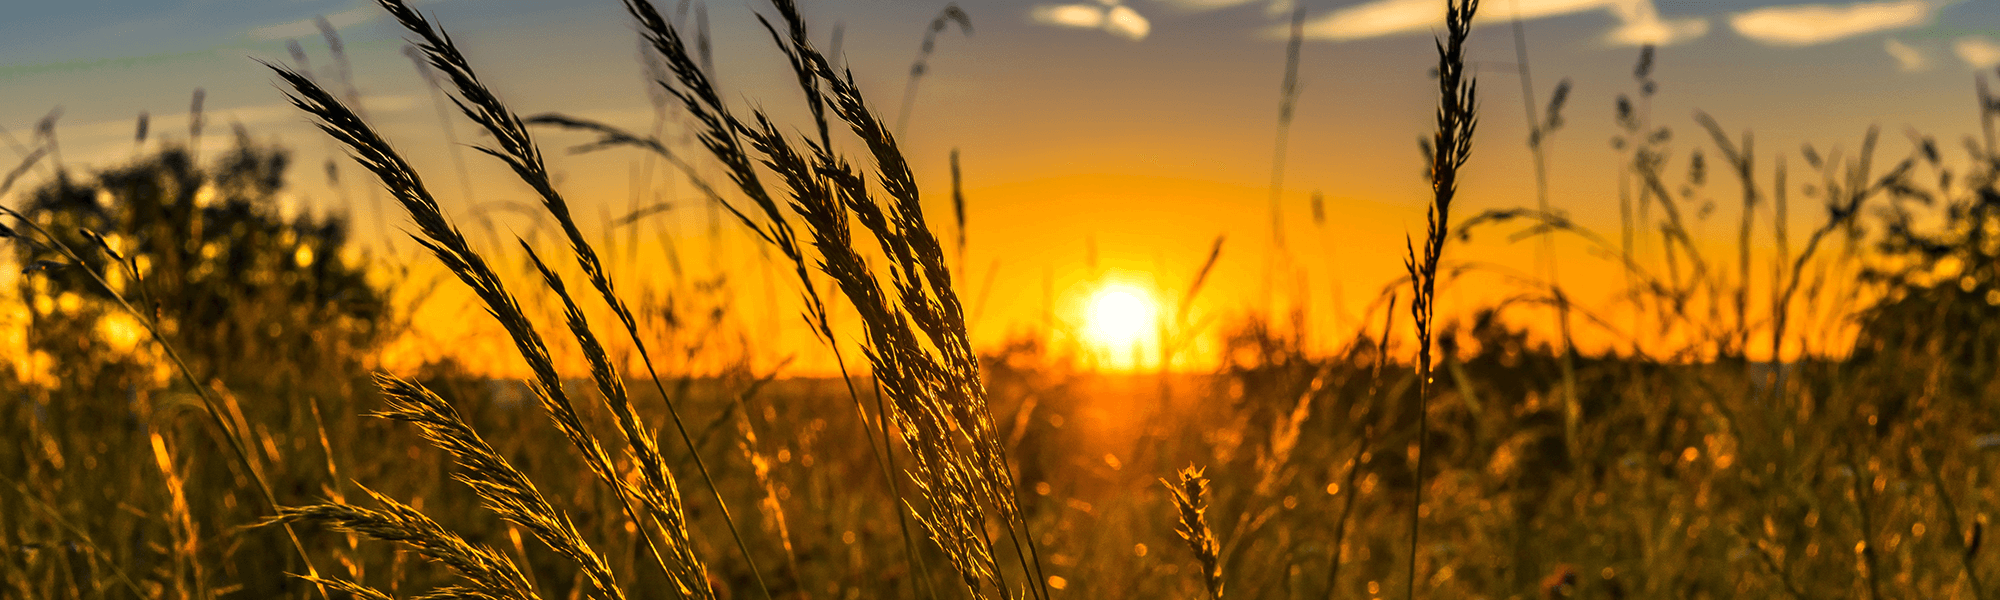 Bourke wheat field at sunset